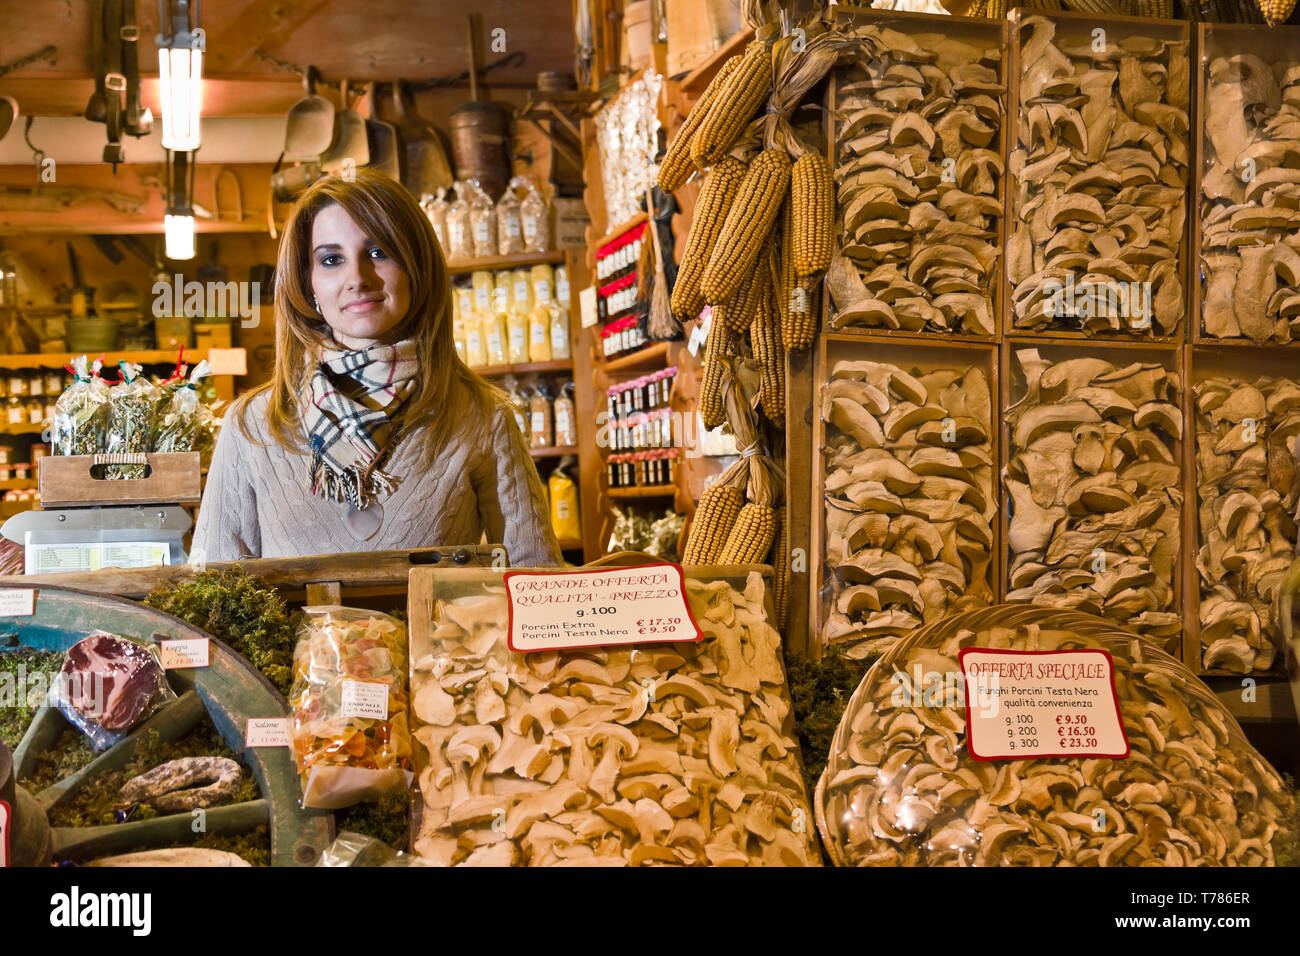 Bormio, negozio 'La Sceleira': Veronica Pozzi (figlia del titolare) dietro a confezioni di funghi secchi. [Ita] Bormio, 'La Sceleira' shop: Veronic Foto Stock